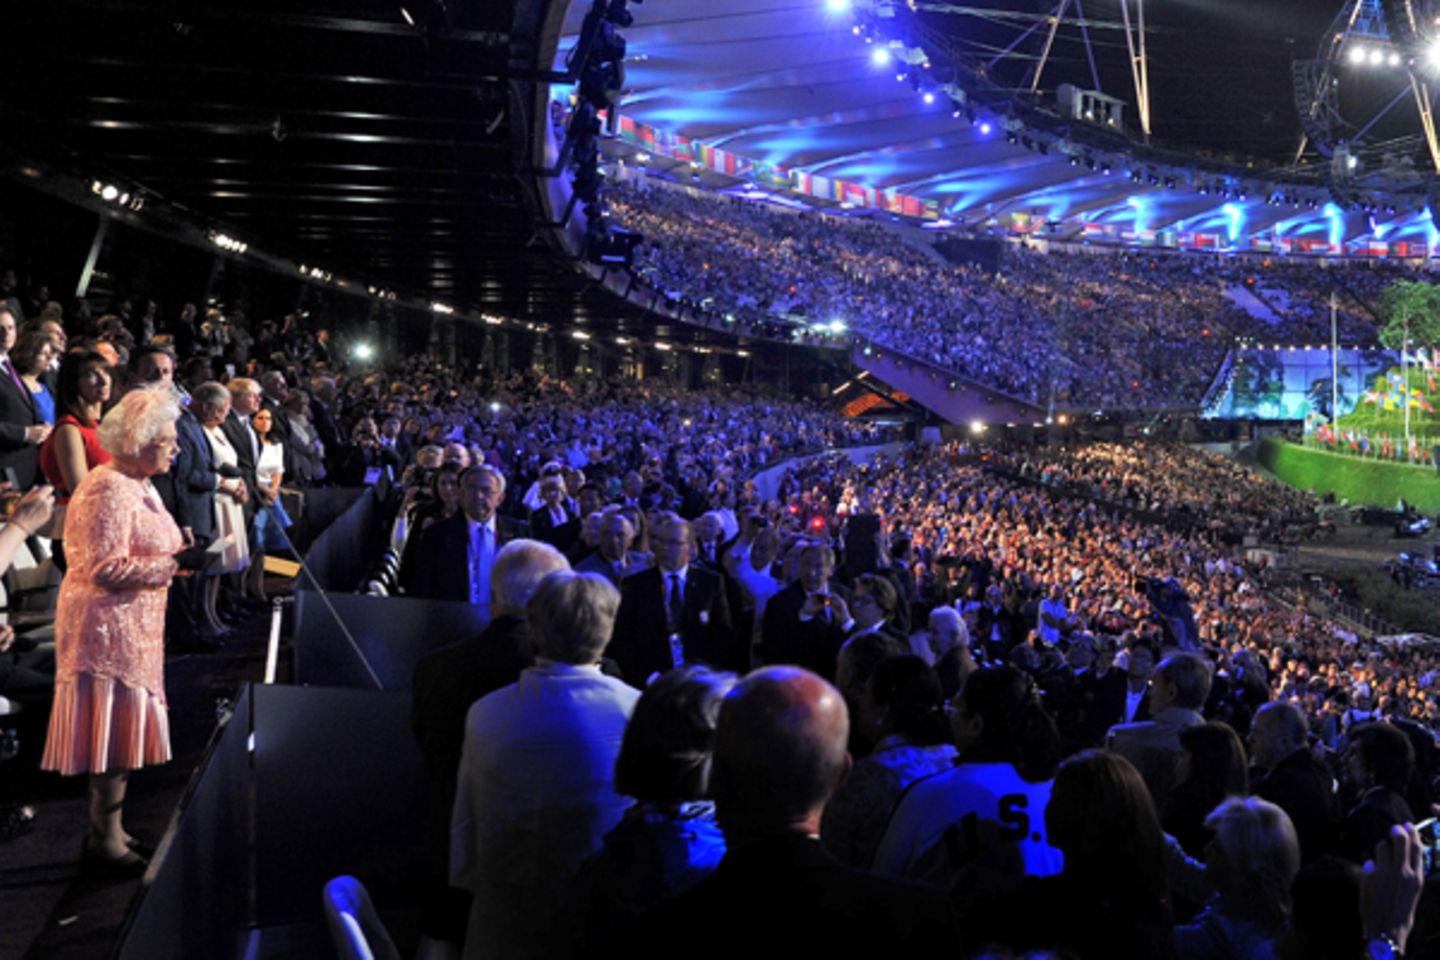 Die Welt schaut auf die Queen im "Olympic Stadium" in London.